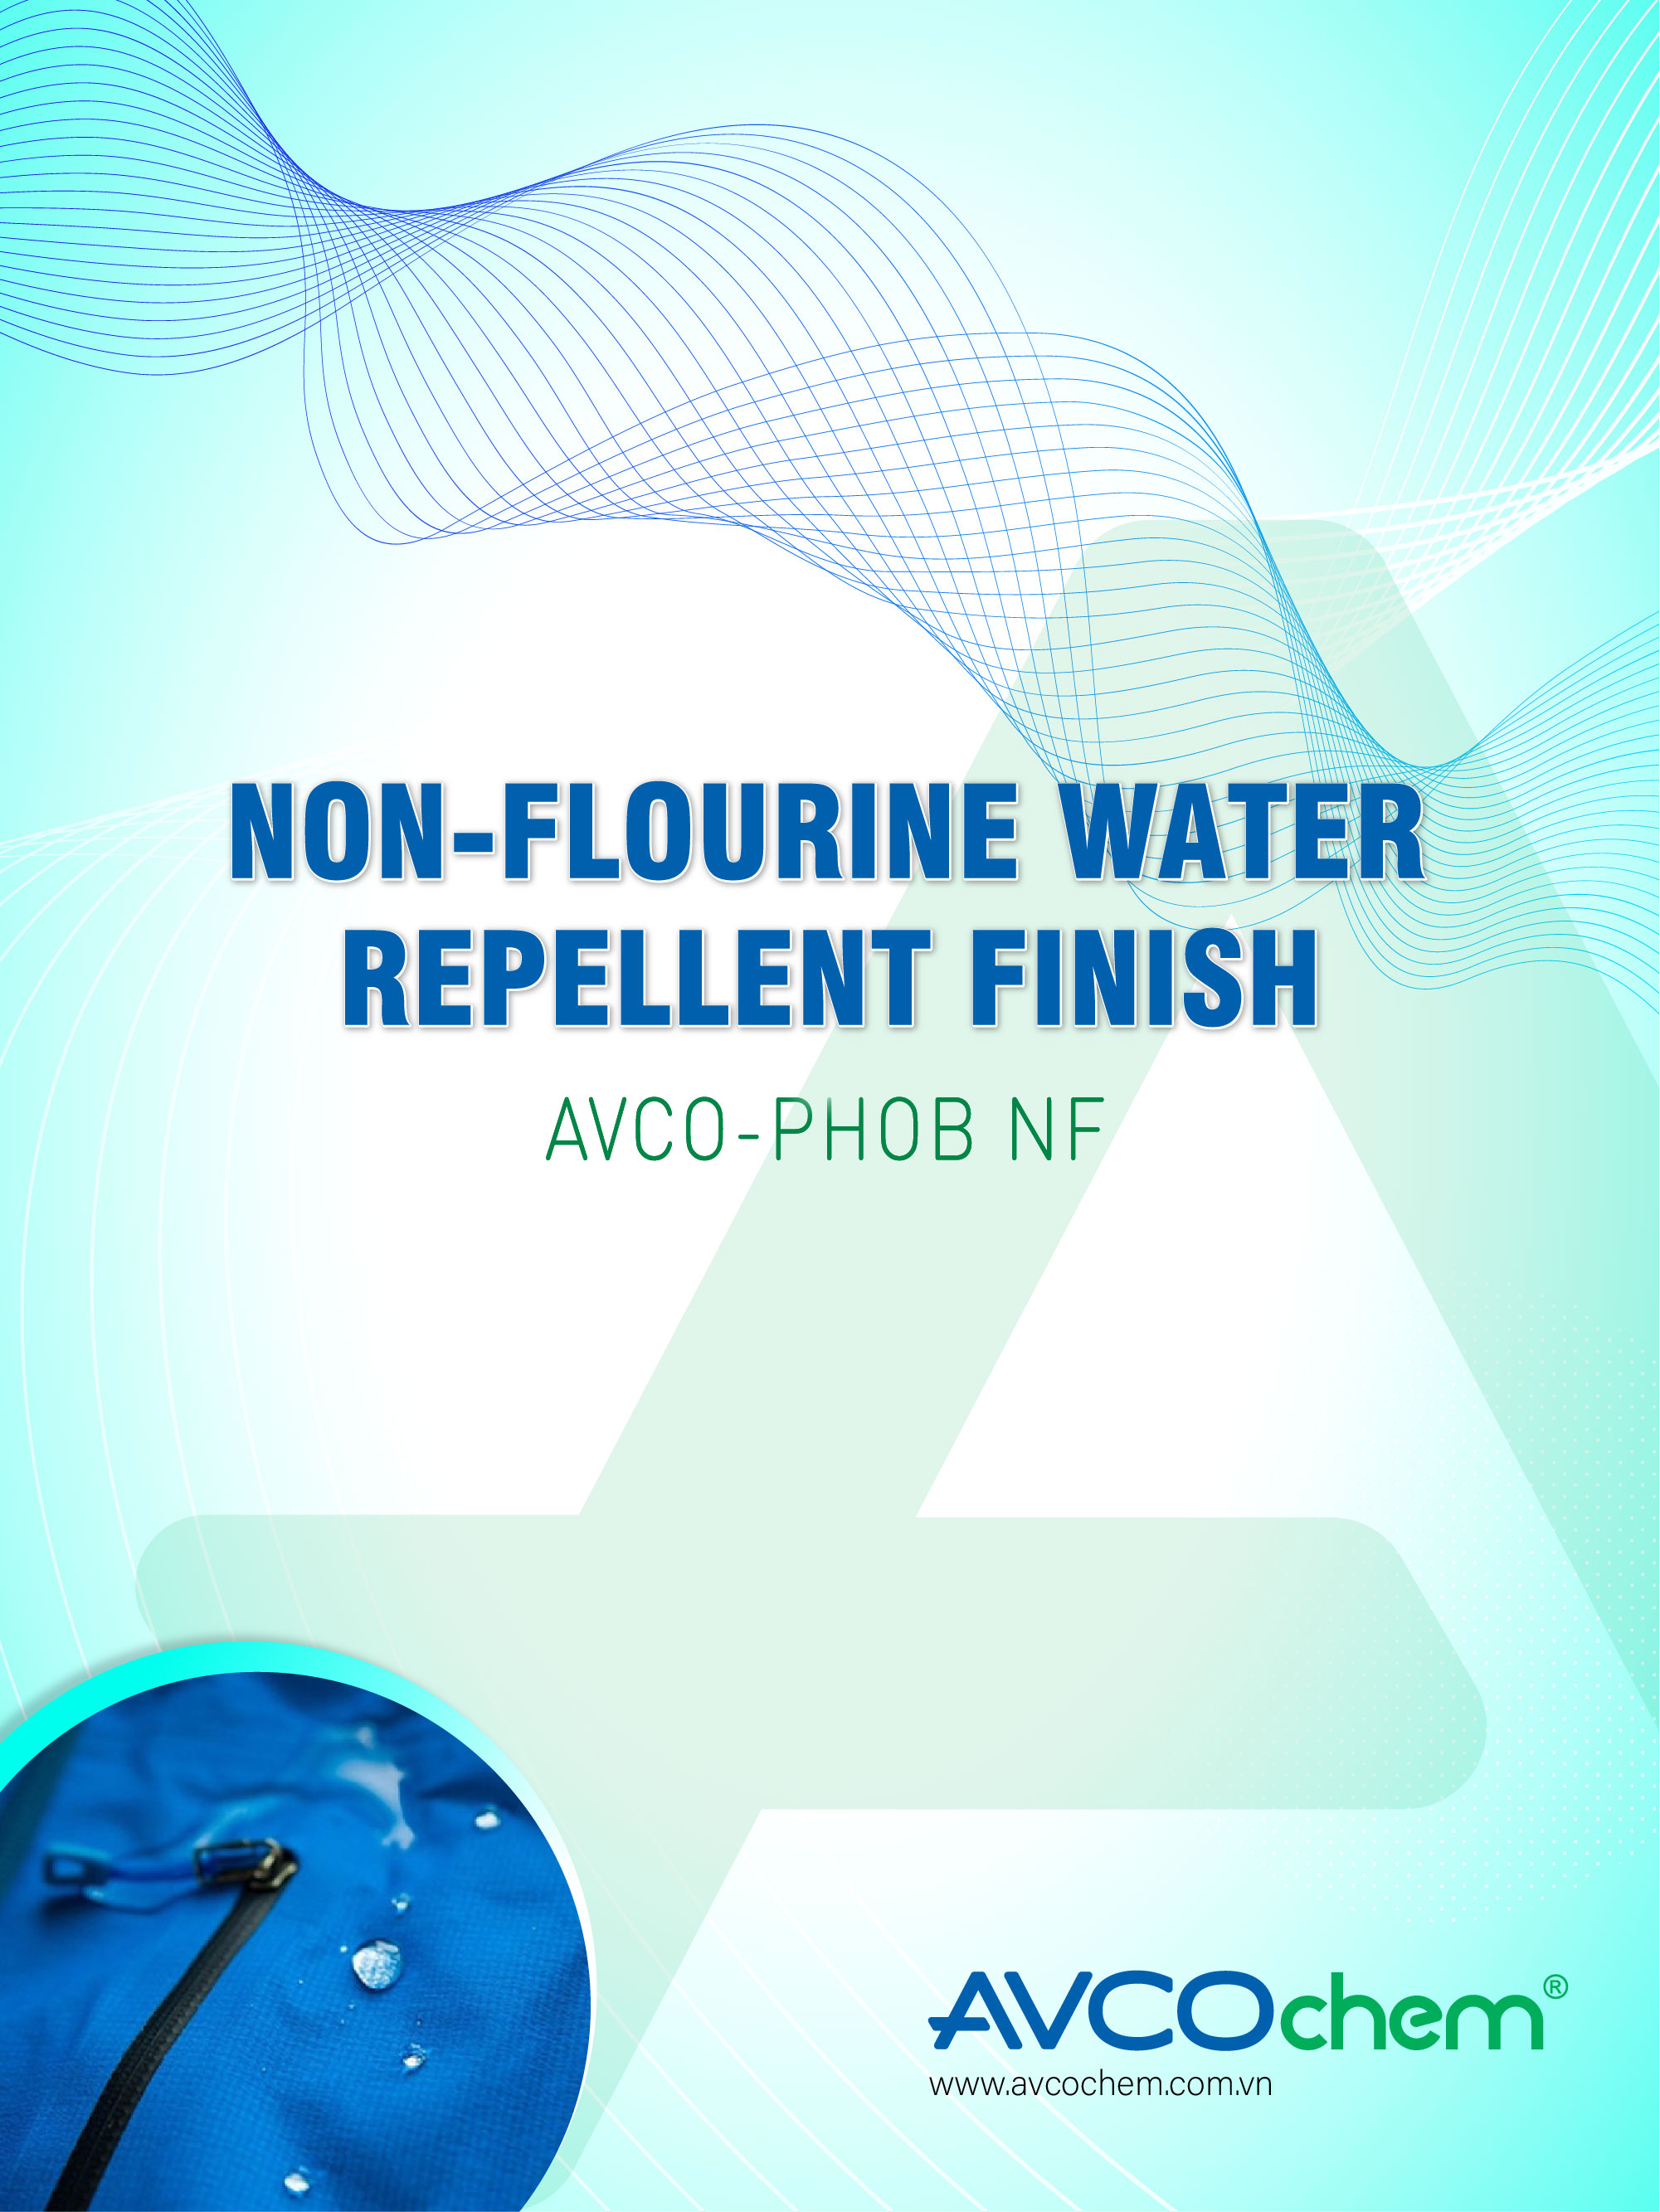 NON-FLOURINE WATER REPELLENT FINISH